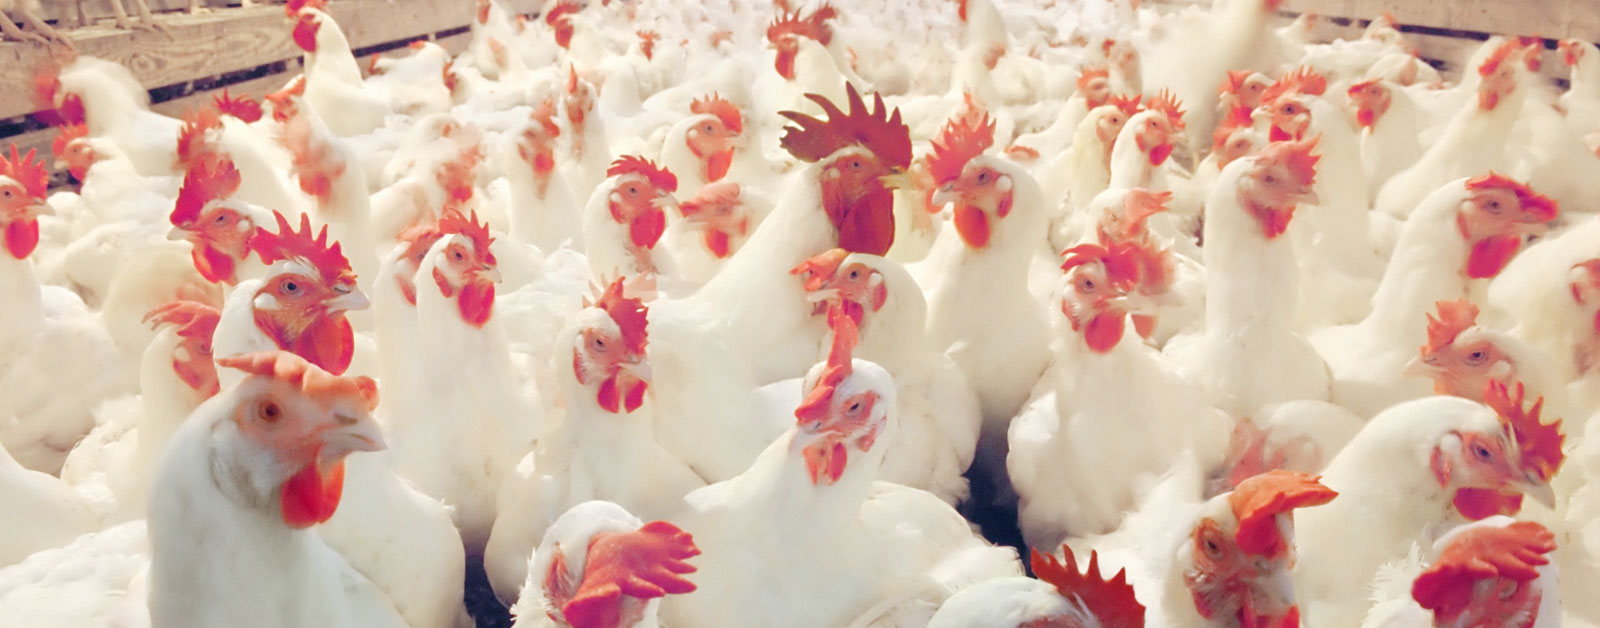 13 مزرعة دواجن خالية من أنفلونزا الطيور ومسموح بتصدير منتجاتها